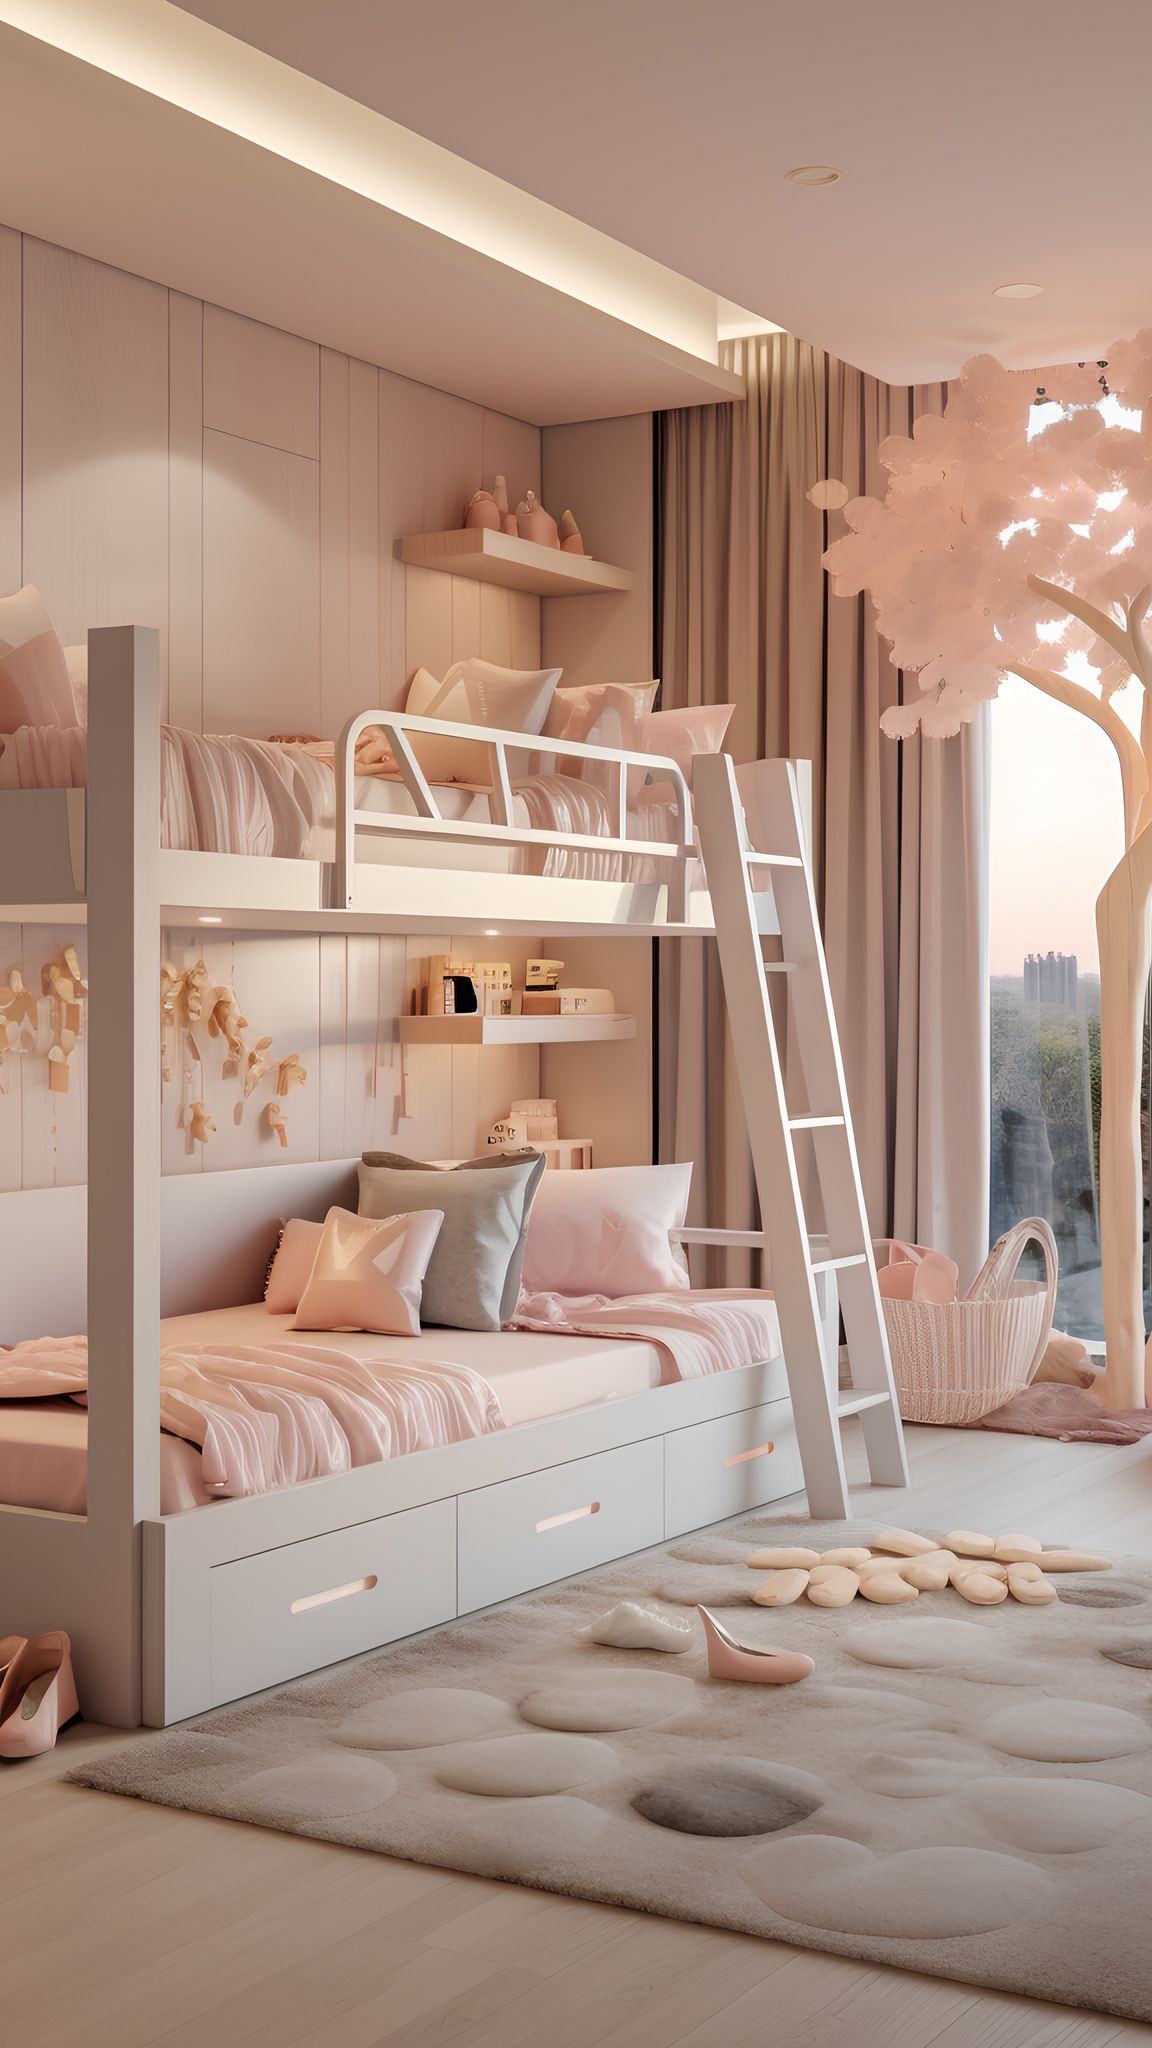 Sweet Dreams: Exploring Bunk Beds for Kids’ Bedrooms